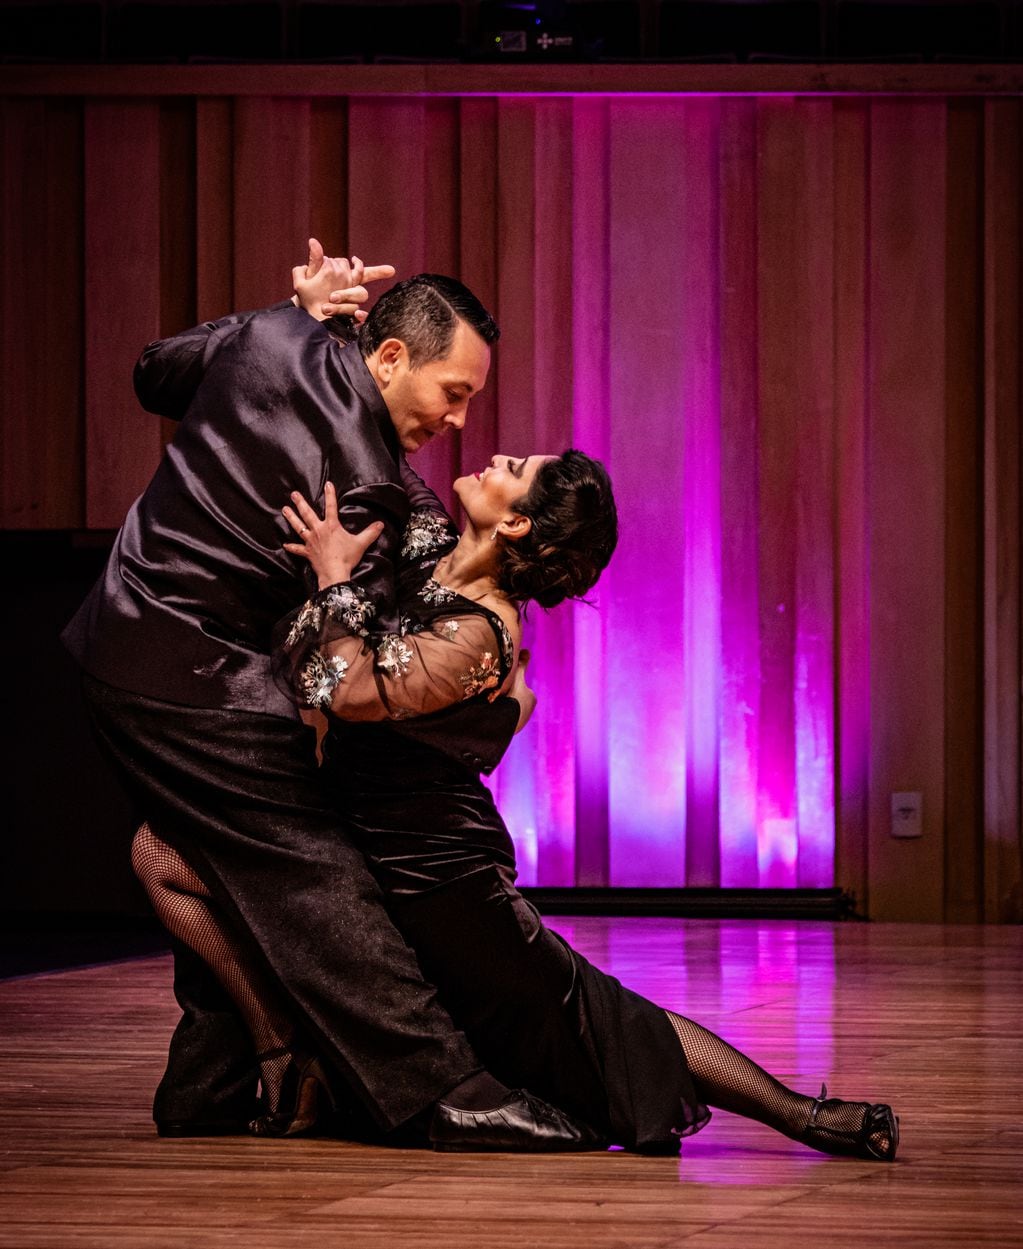 Paola Valdivia y Javier Jofré, bailarines mendocinos que llegaron dos veces a la final y participan desde 2010 del Mundial de Tango